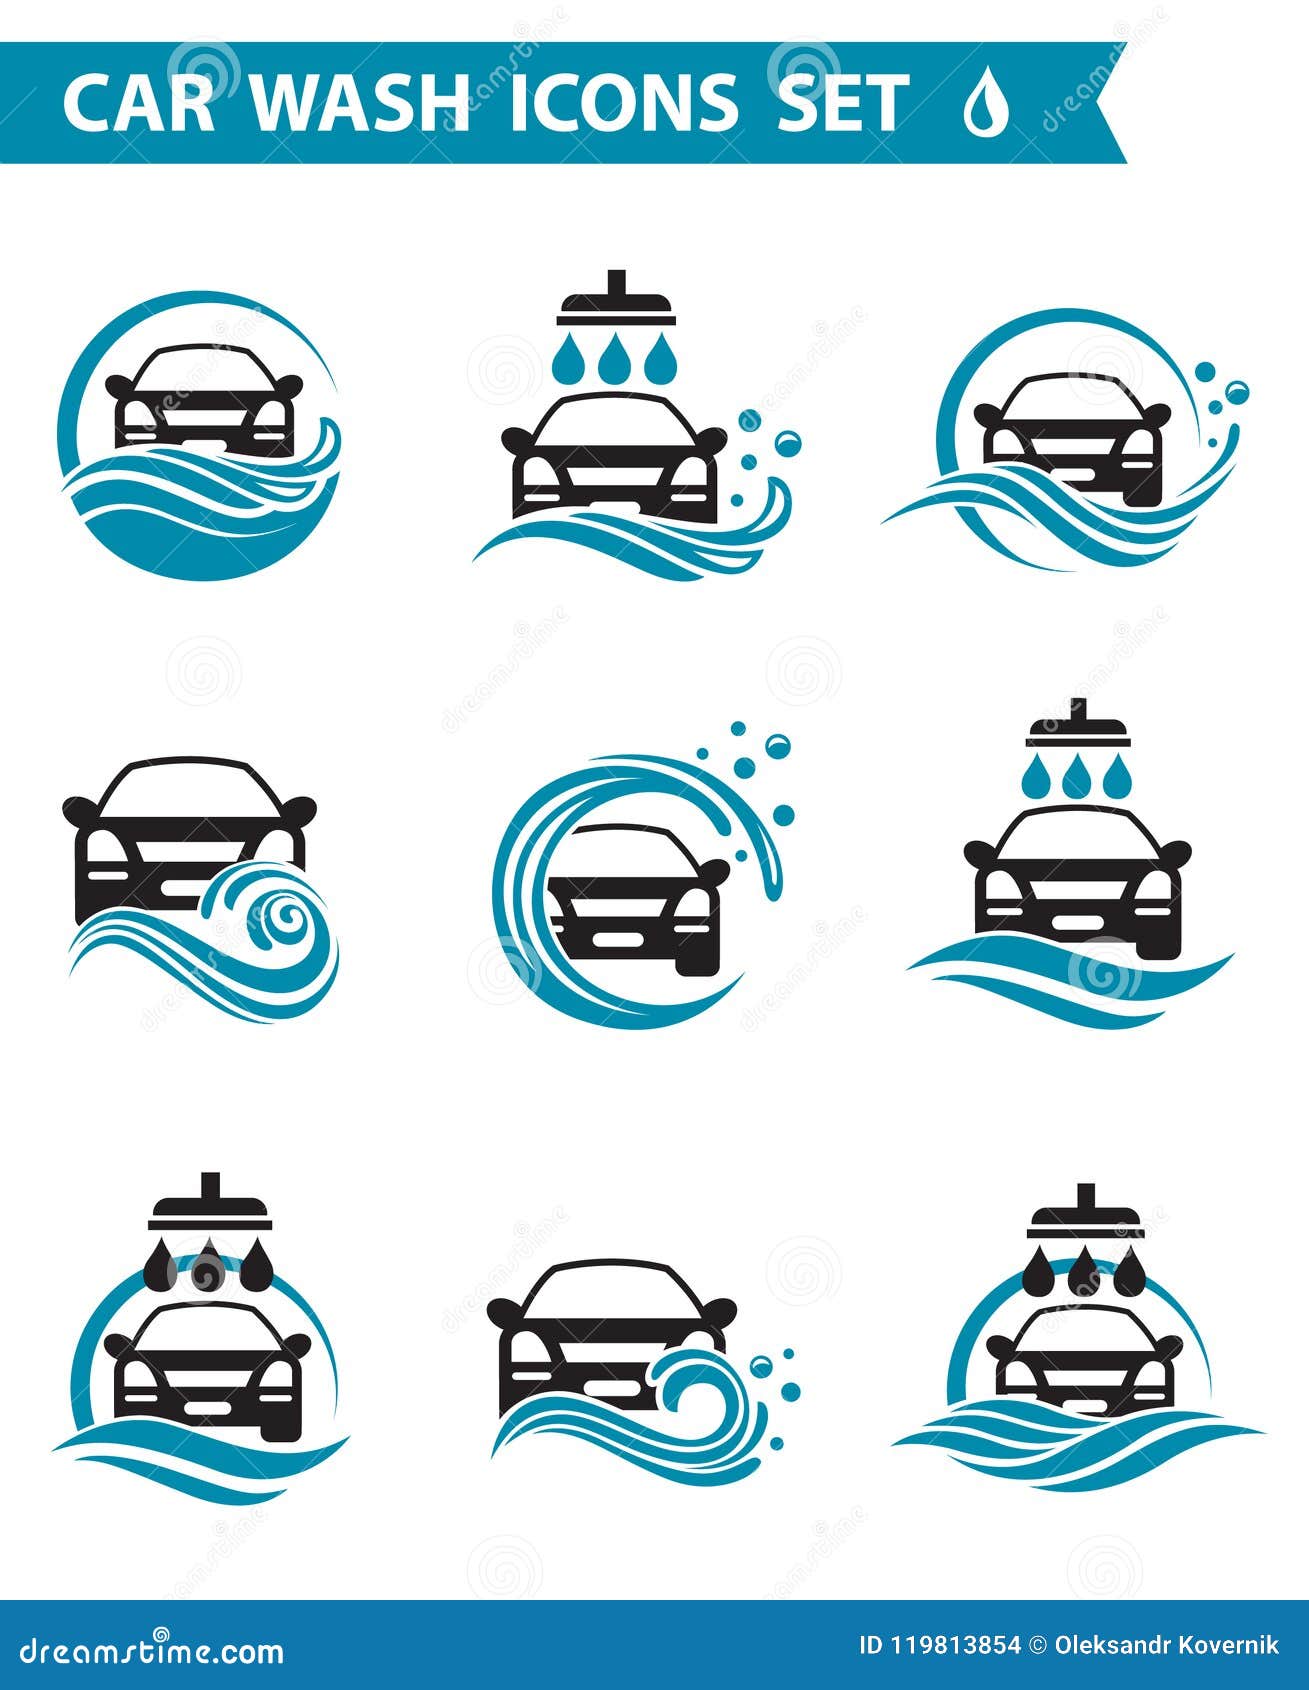 car wash icons set